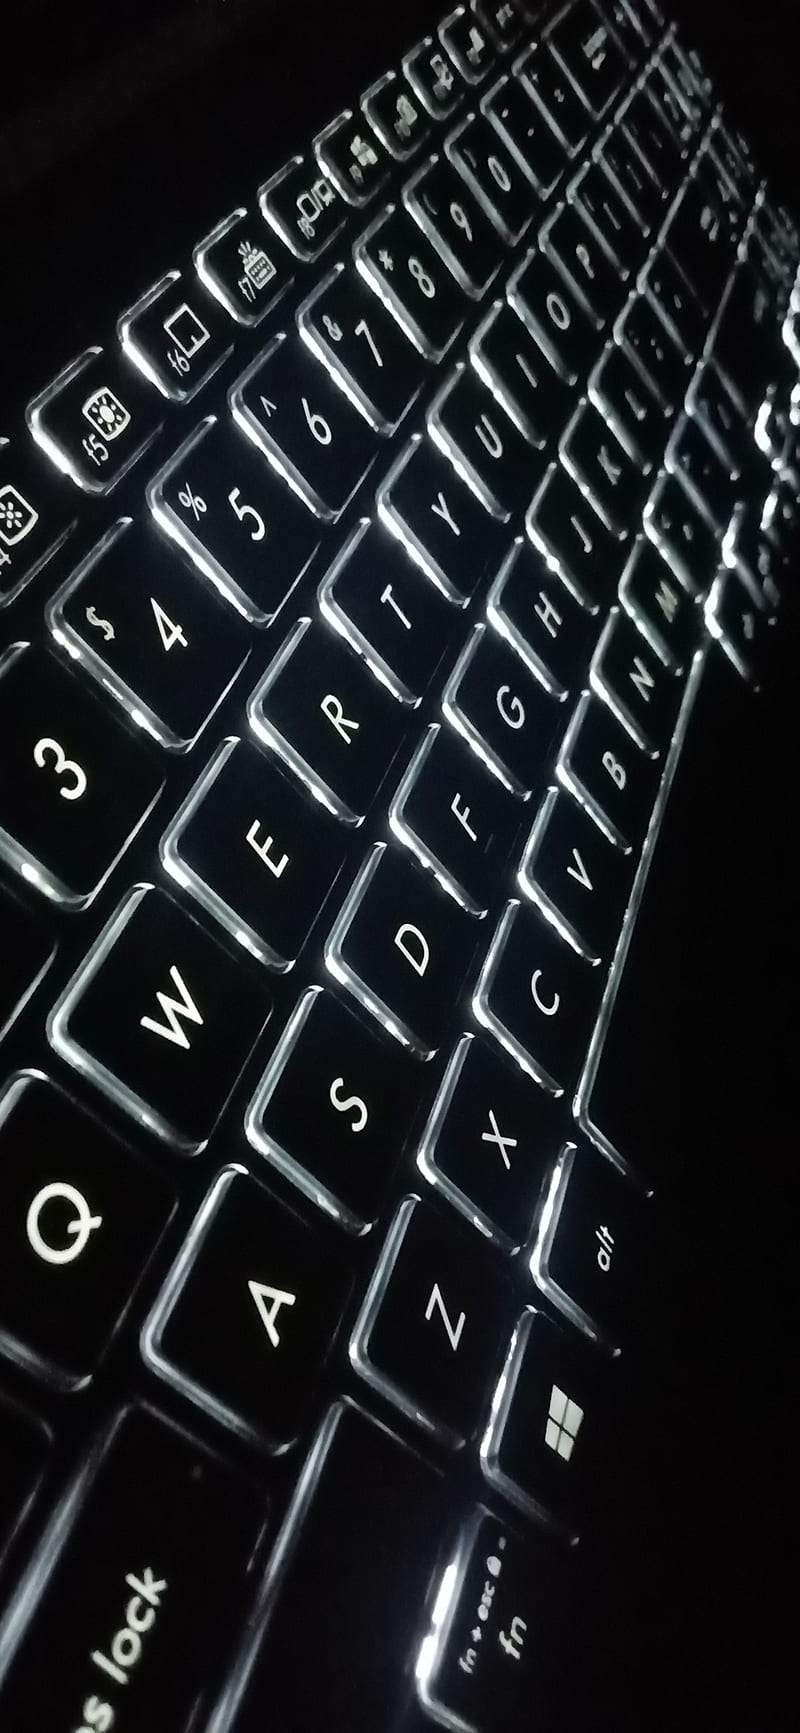 Keyboard, computer, message, technology, HD phone wallpaper